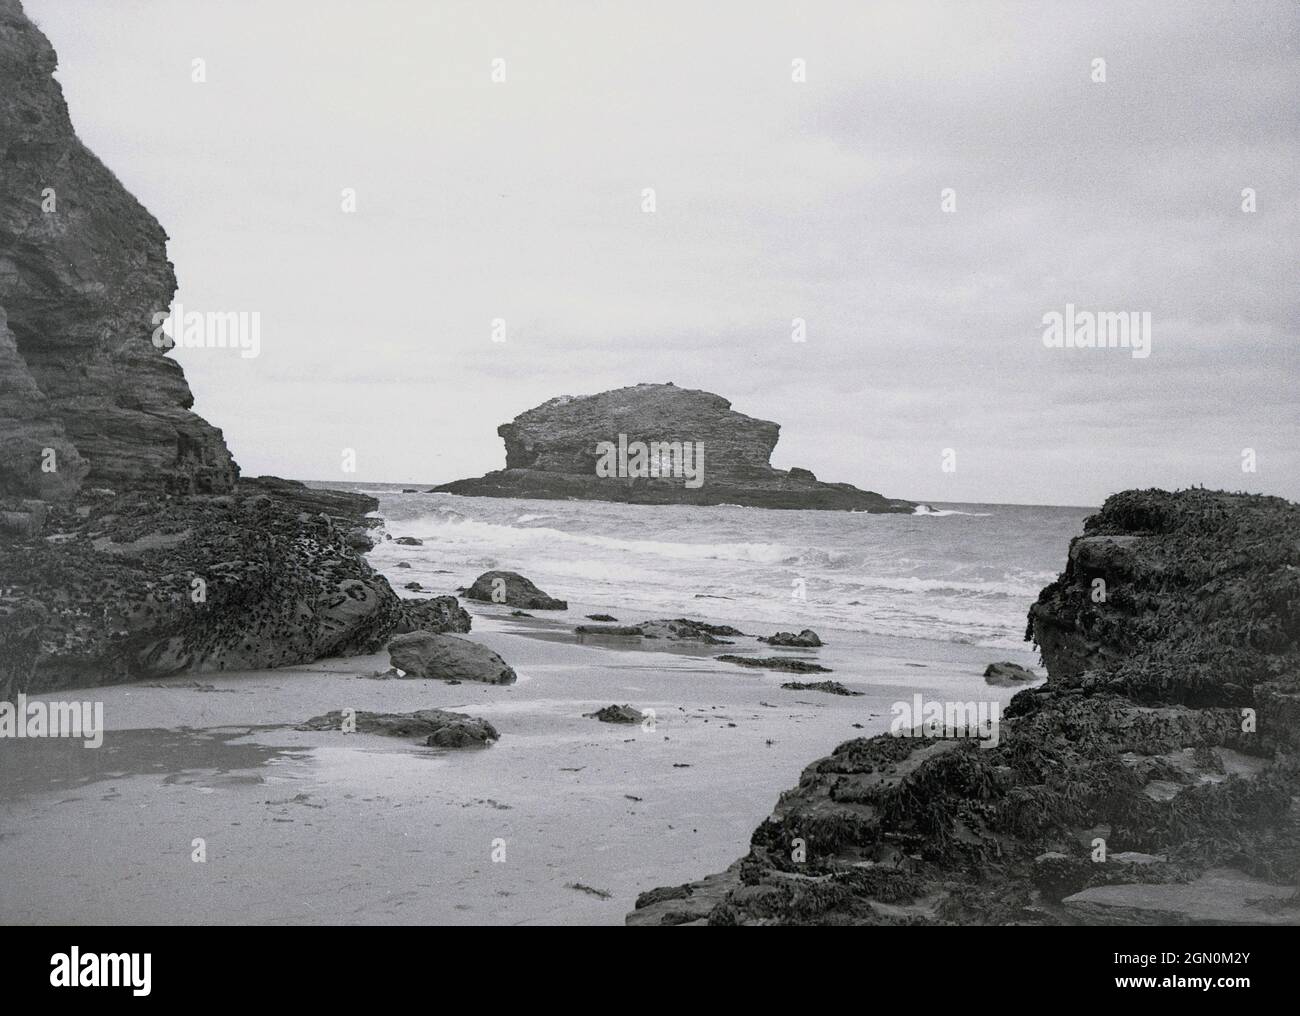 Années 1950, historique, une petite crique avec de grands rochers dans la mer à la fin de Land, Cornwall, à l'extrême sud-ouest de l'Angleterre, Royaume-Uni, célèbre pour son littoral sauvage et spectaculaire de rochers de granit sur l'océan Atlantique. Banque D'Images